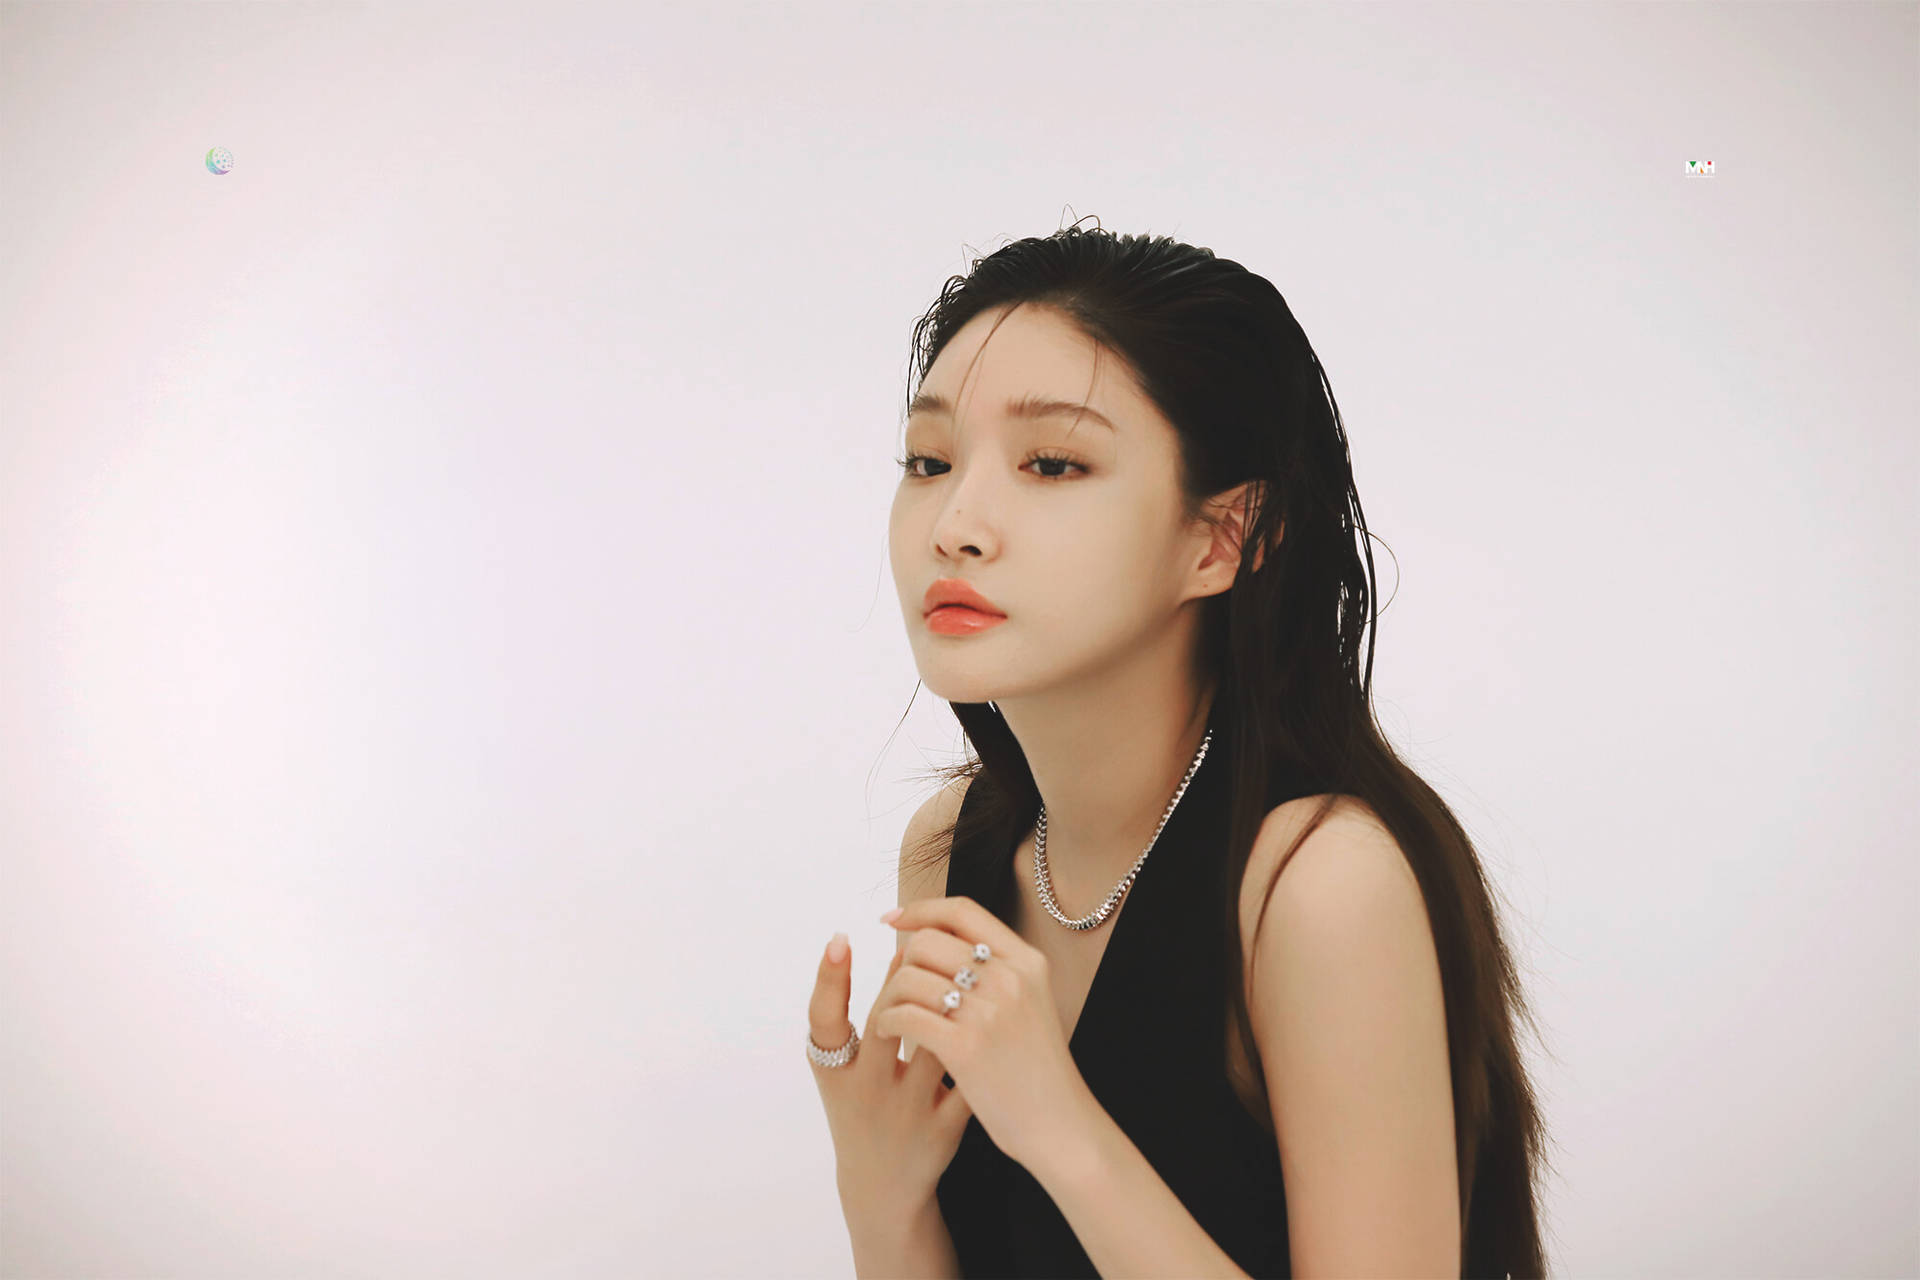 Singer Chungha Photoshoot Background